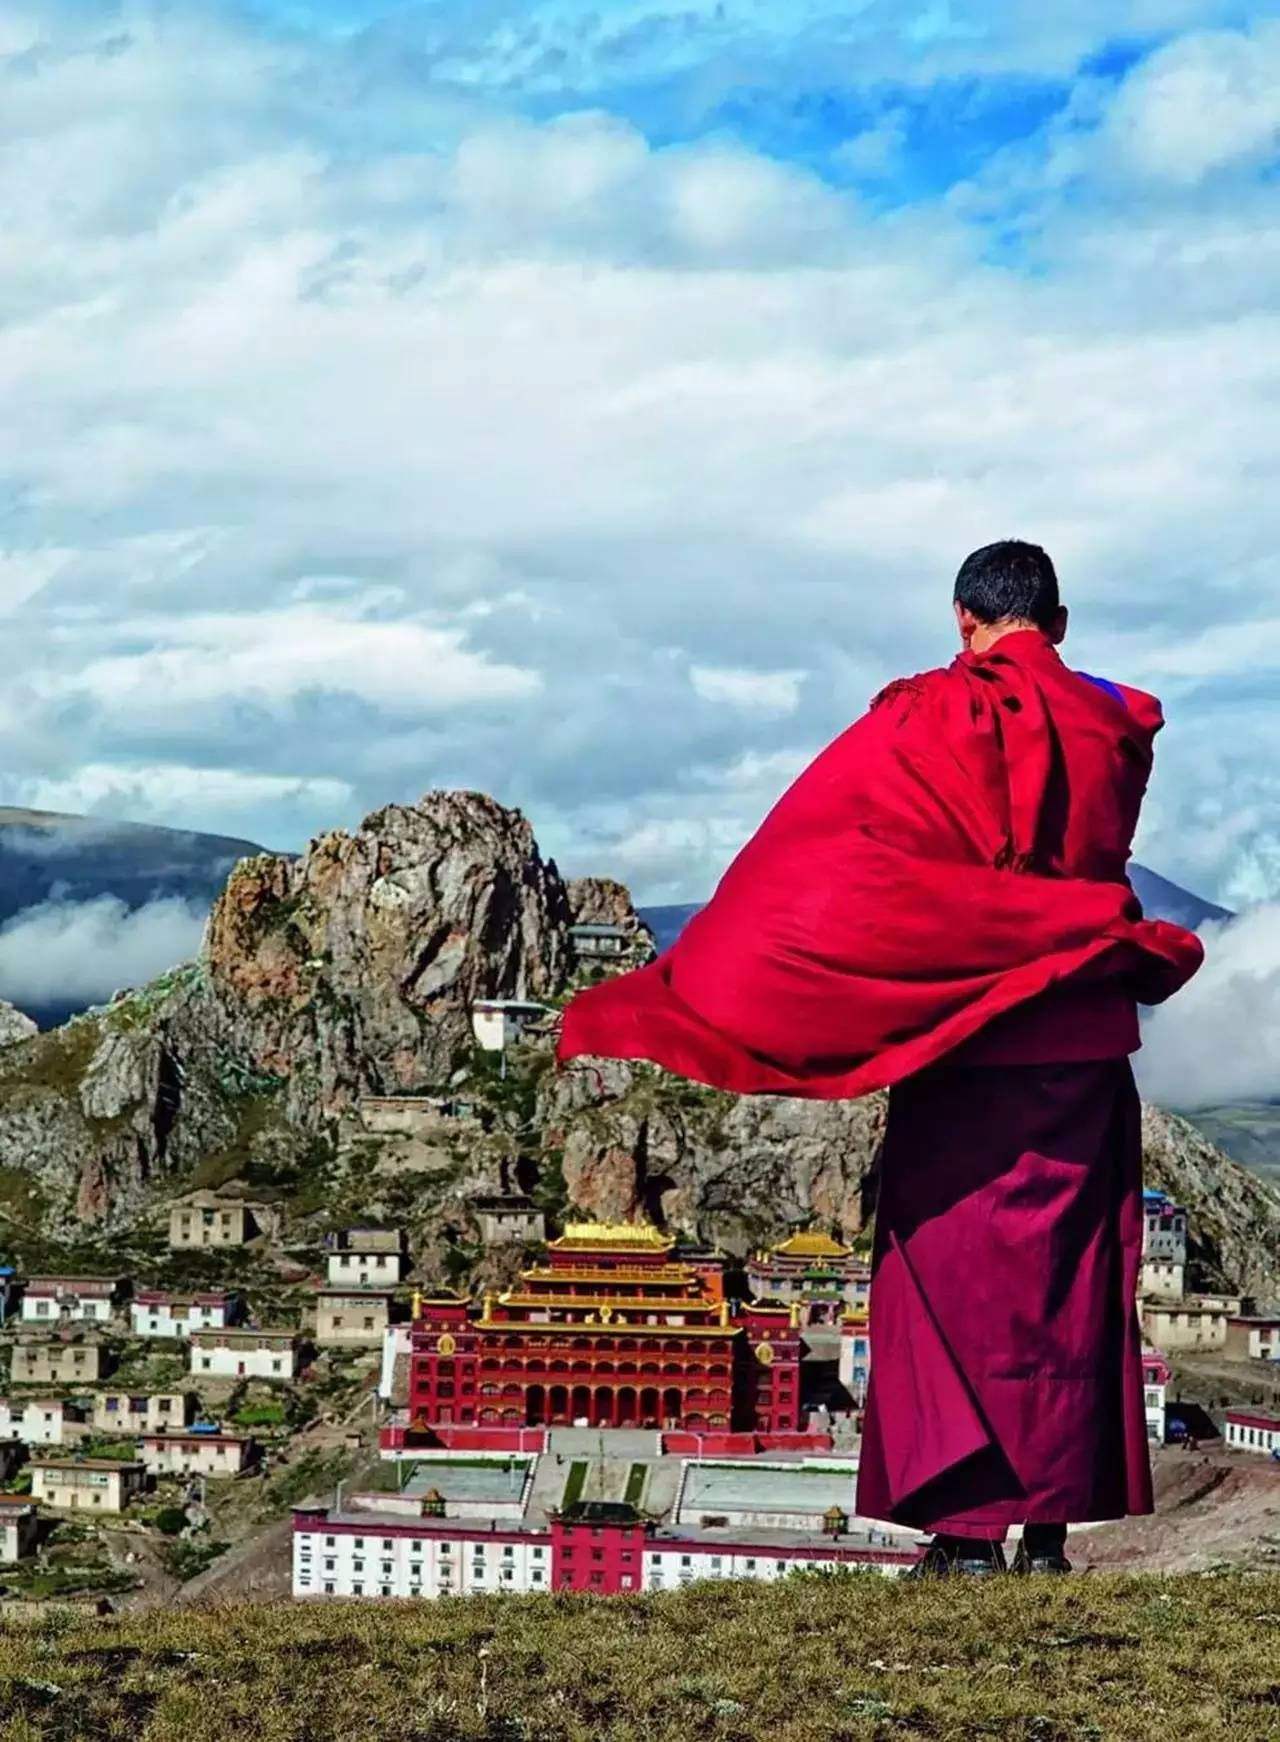 用散文诗解读西藏，美文配美景